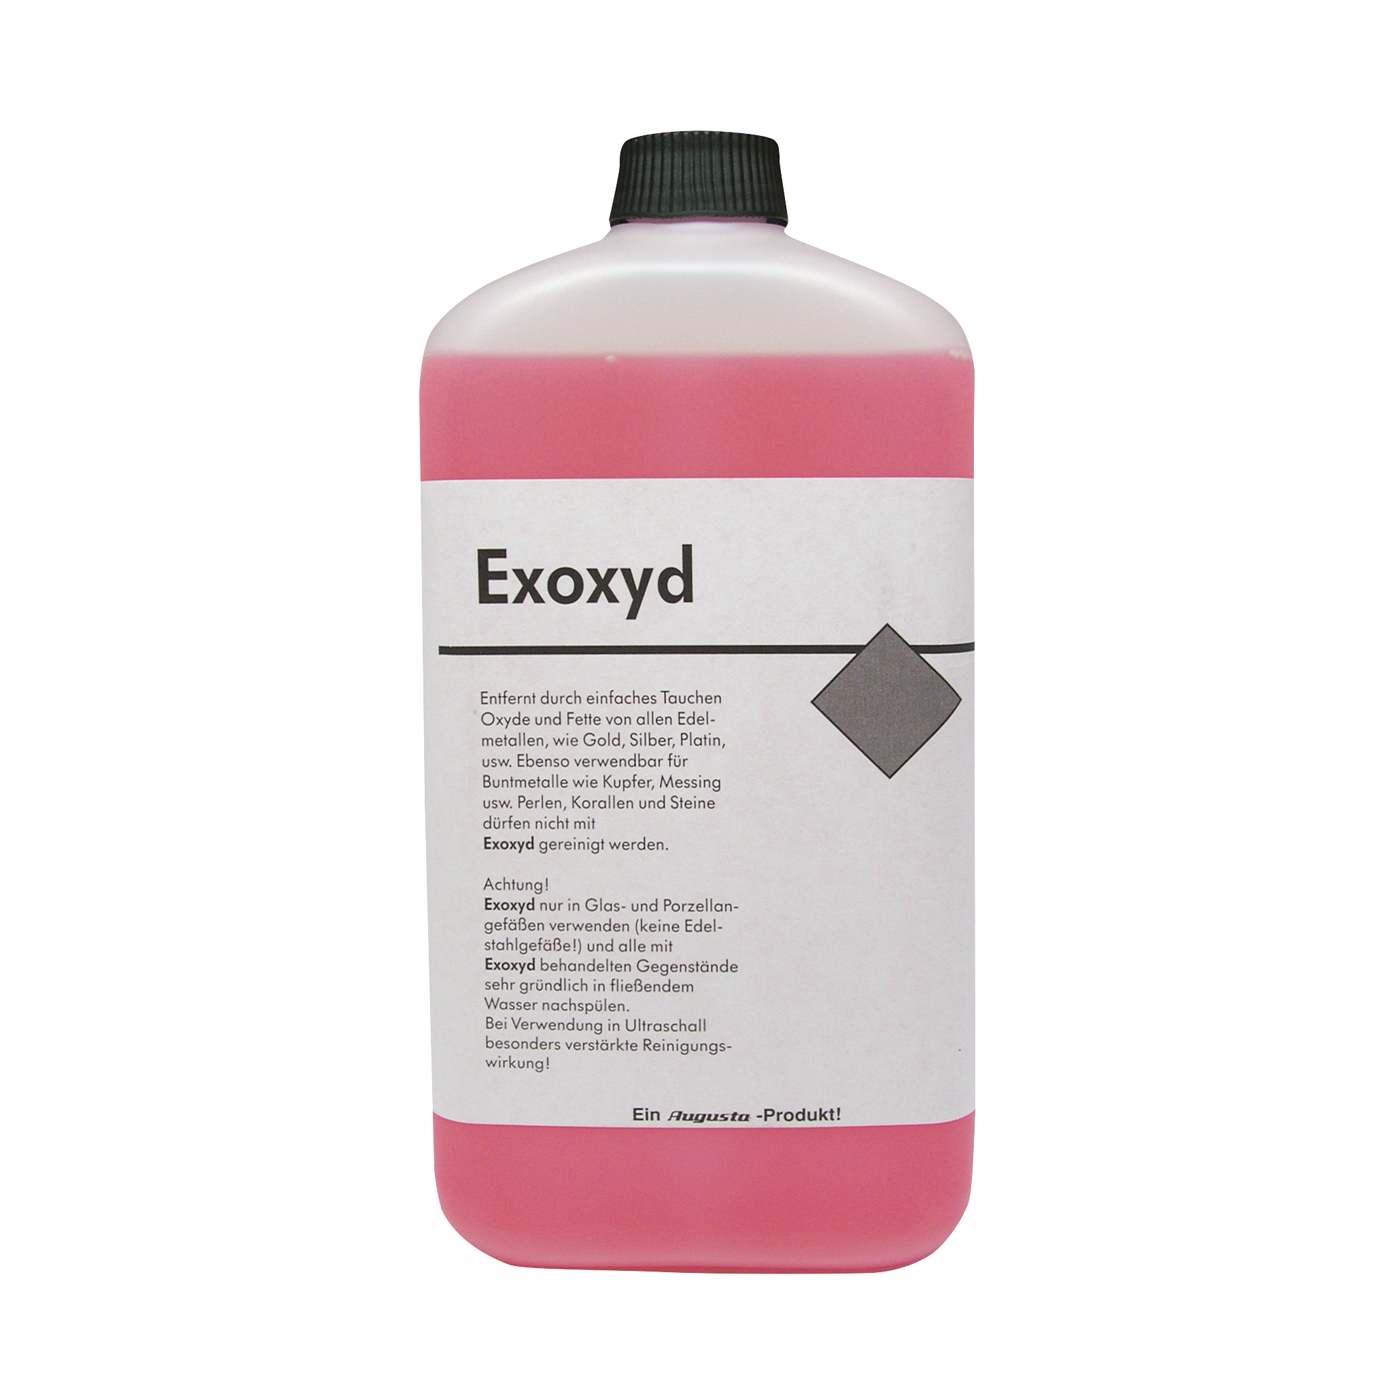 Exoxyd Reinigungsmittel, 1000 ml - 1000 ml